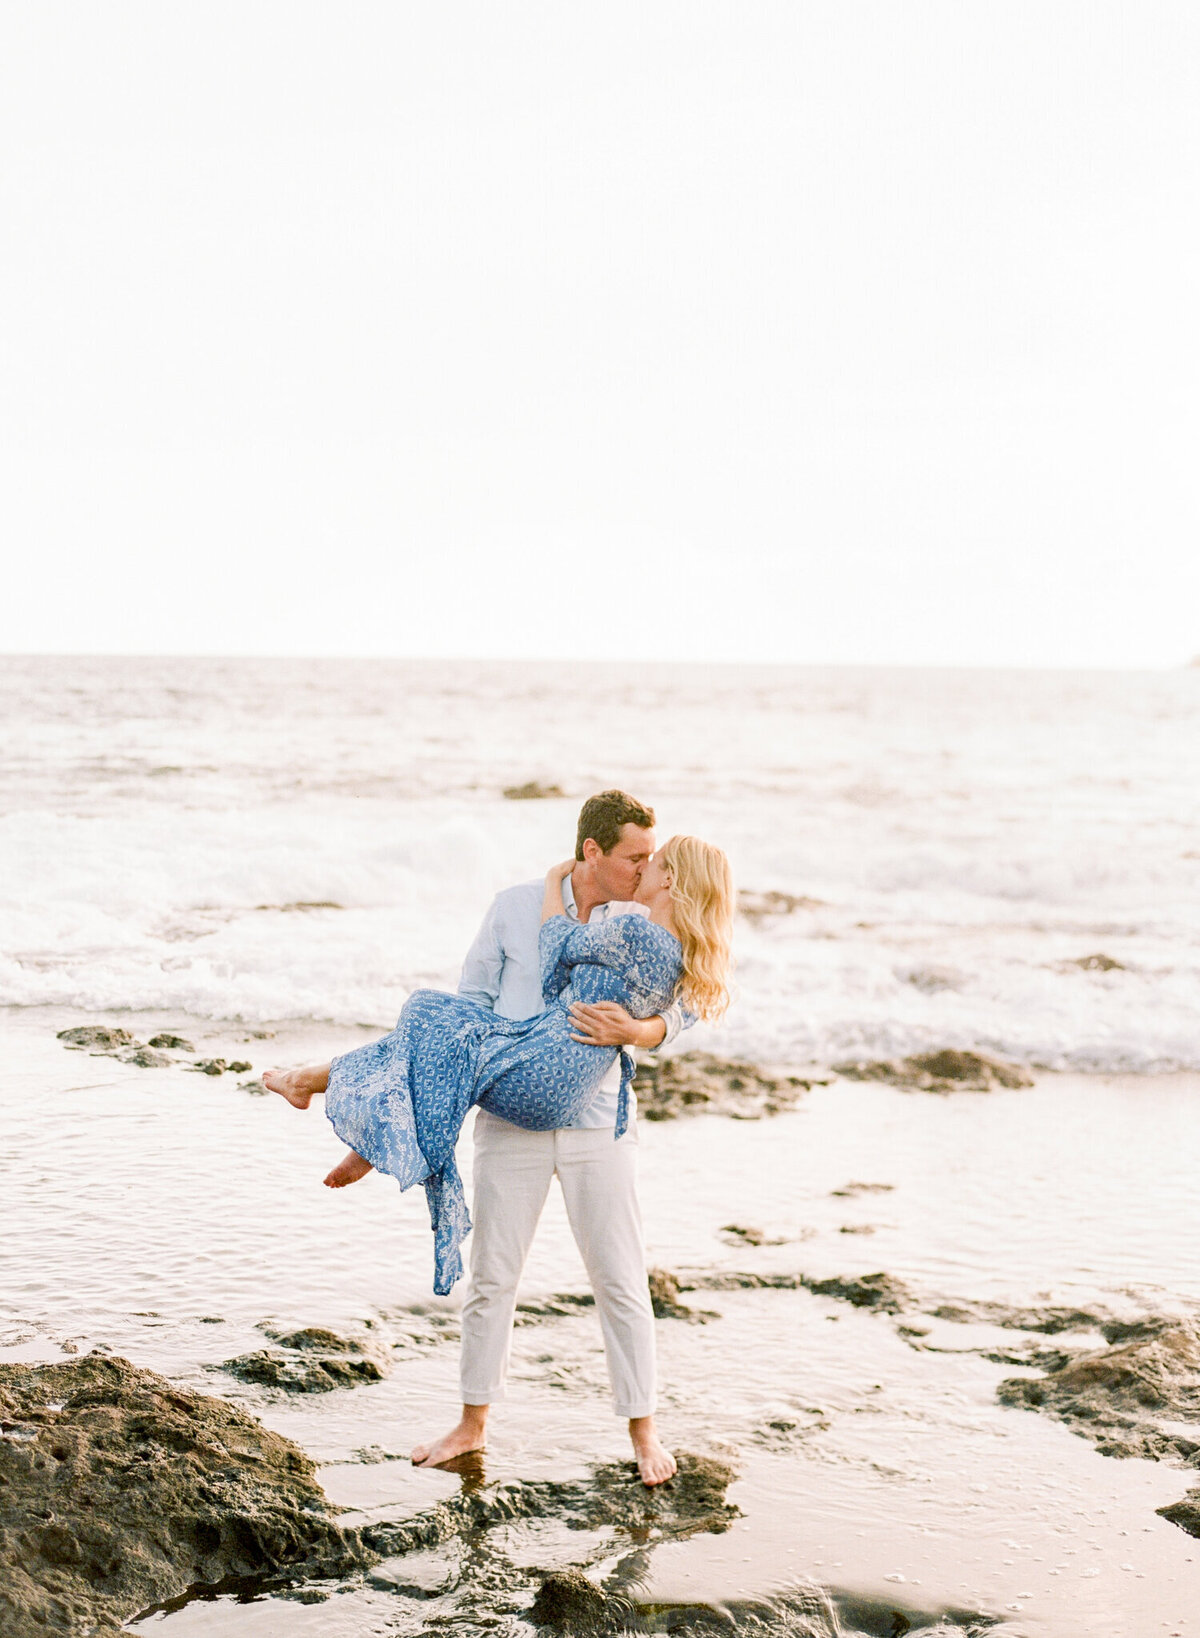 Caroline+Braedon | Hawaii Wedding & Lifestyle Photography | Ashley Goodwin Photography